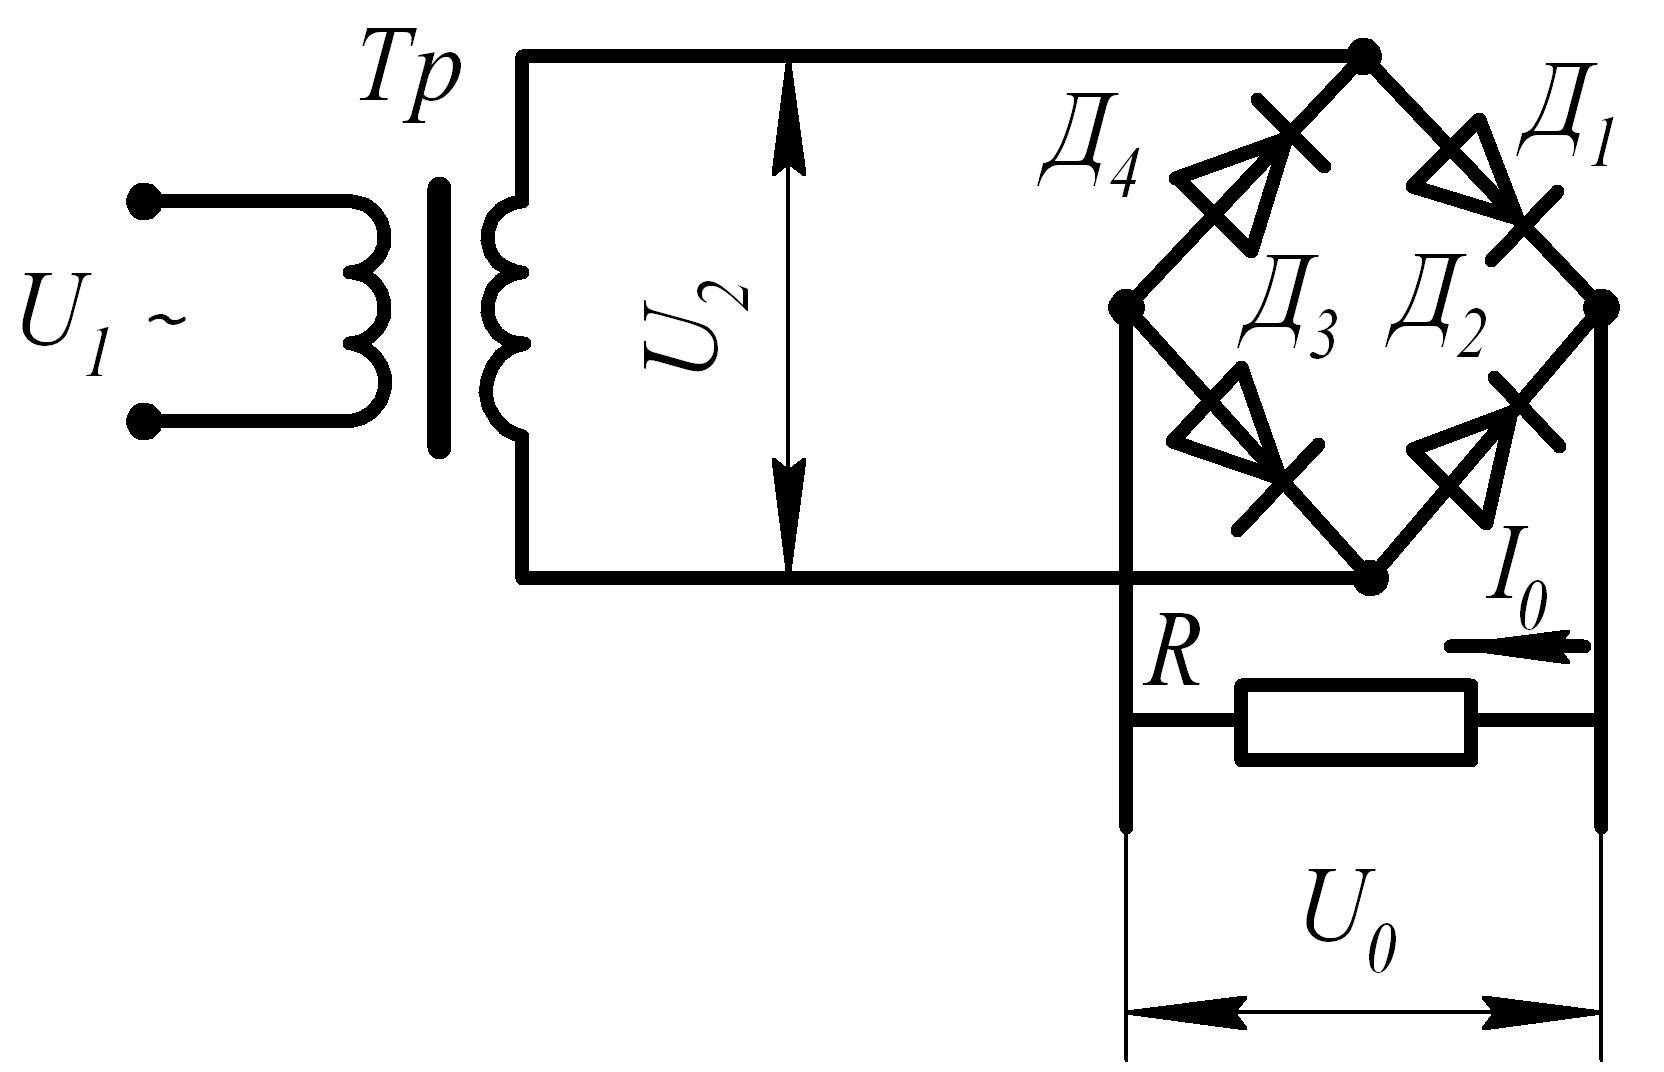 На рисунке изображена схема выпрямителя однополупериодного выпрямителя